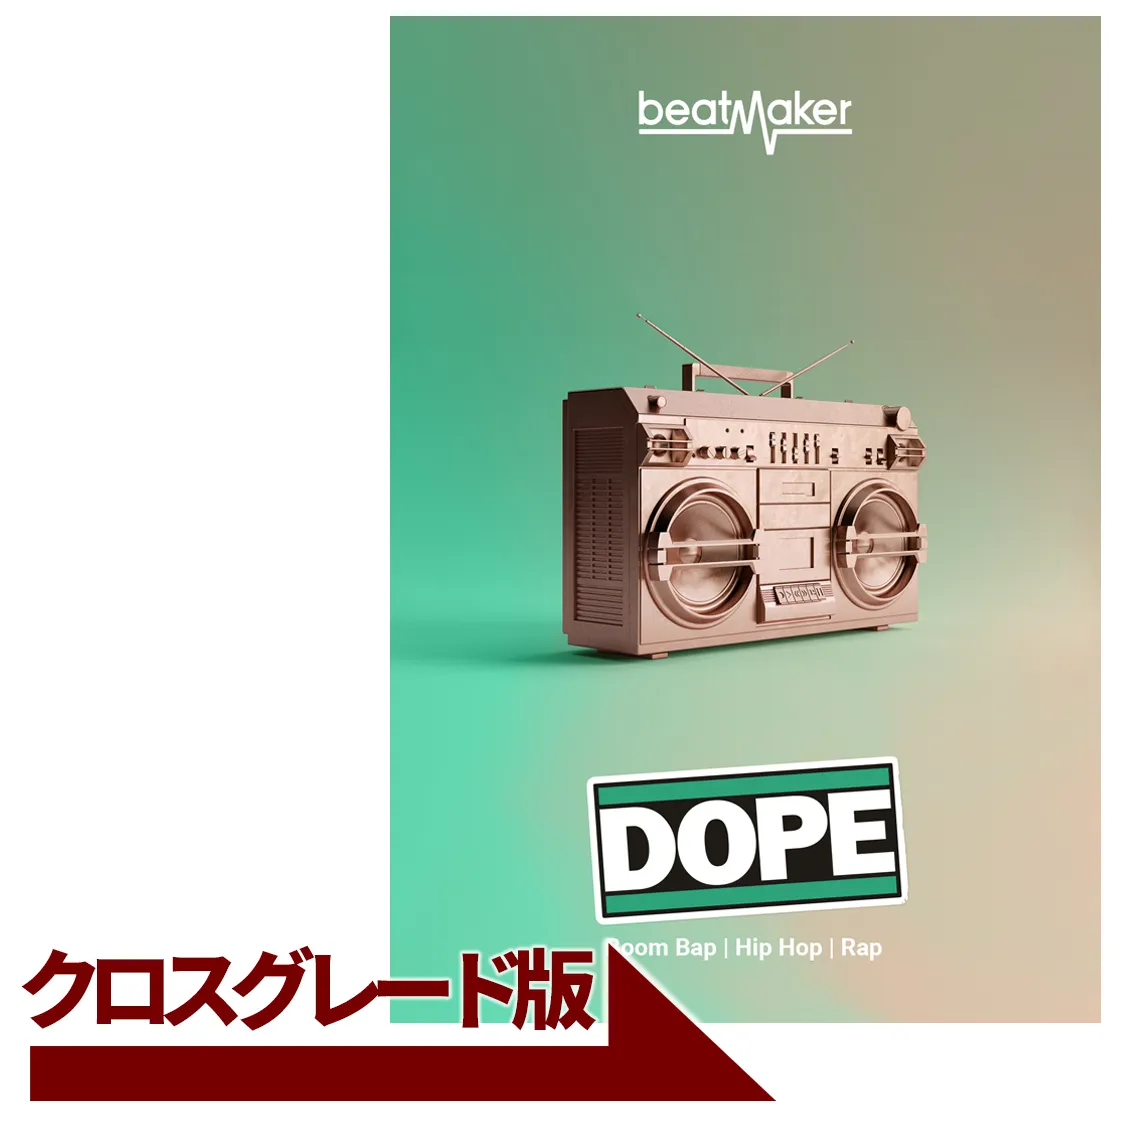 Beatmaker DOPE 2 クロスグレード